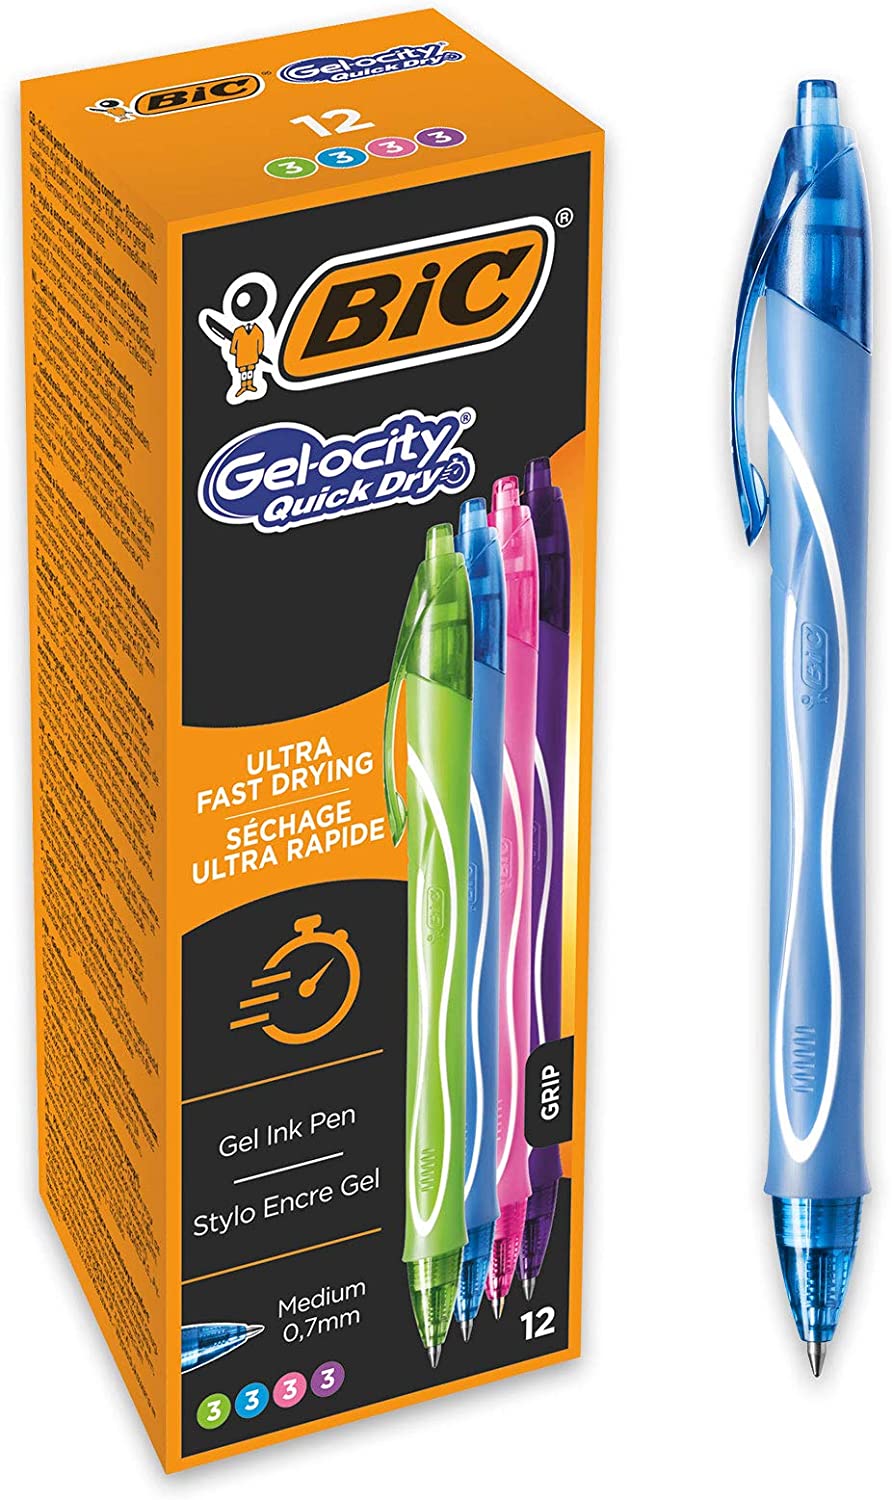 Bic Gel-Ocity Quick Dry Pack de 12 Boligrafos de Gel Retractil - Punta Media de 0.7 mm - Tinta de Gel - Anti-Manchas - Secado Ultra Rapido - Colores Surtidos